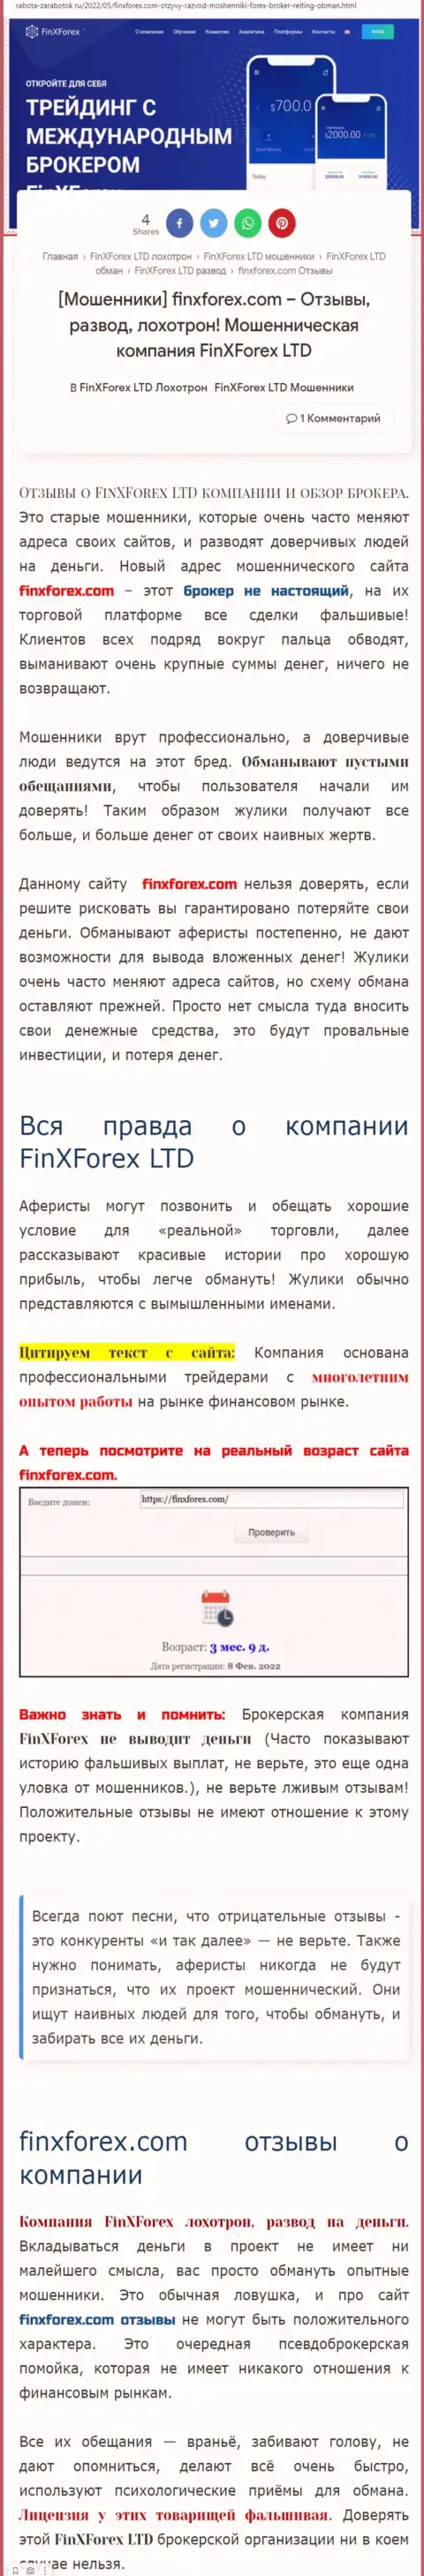 Создатель обзорной статьи об FinXForex Com заявляет, что в компании Fin X Forex обманывают